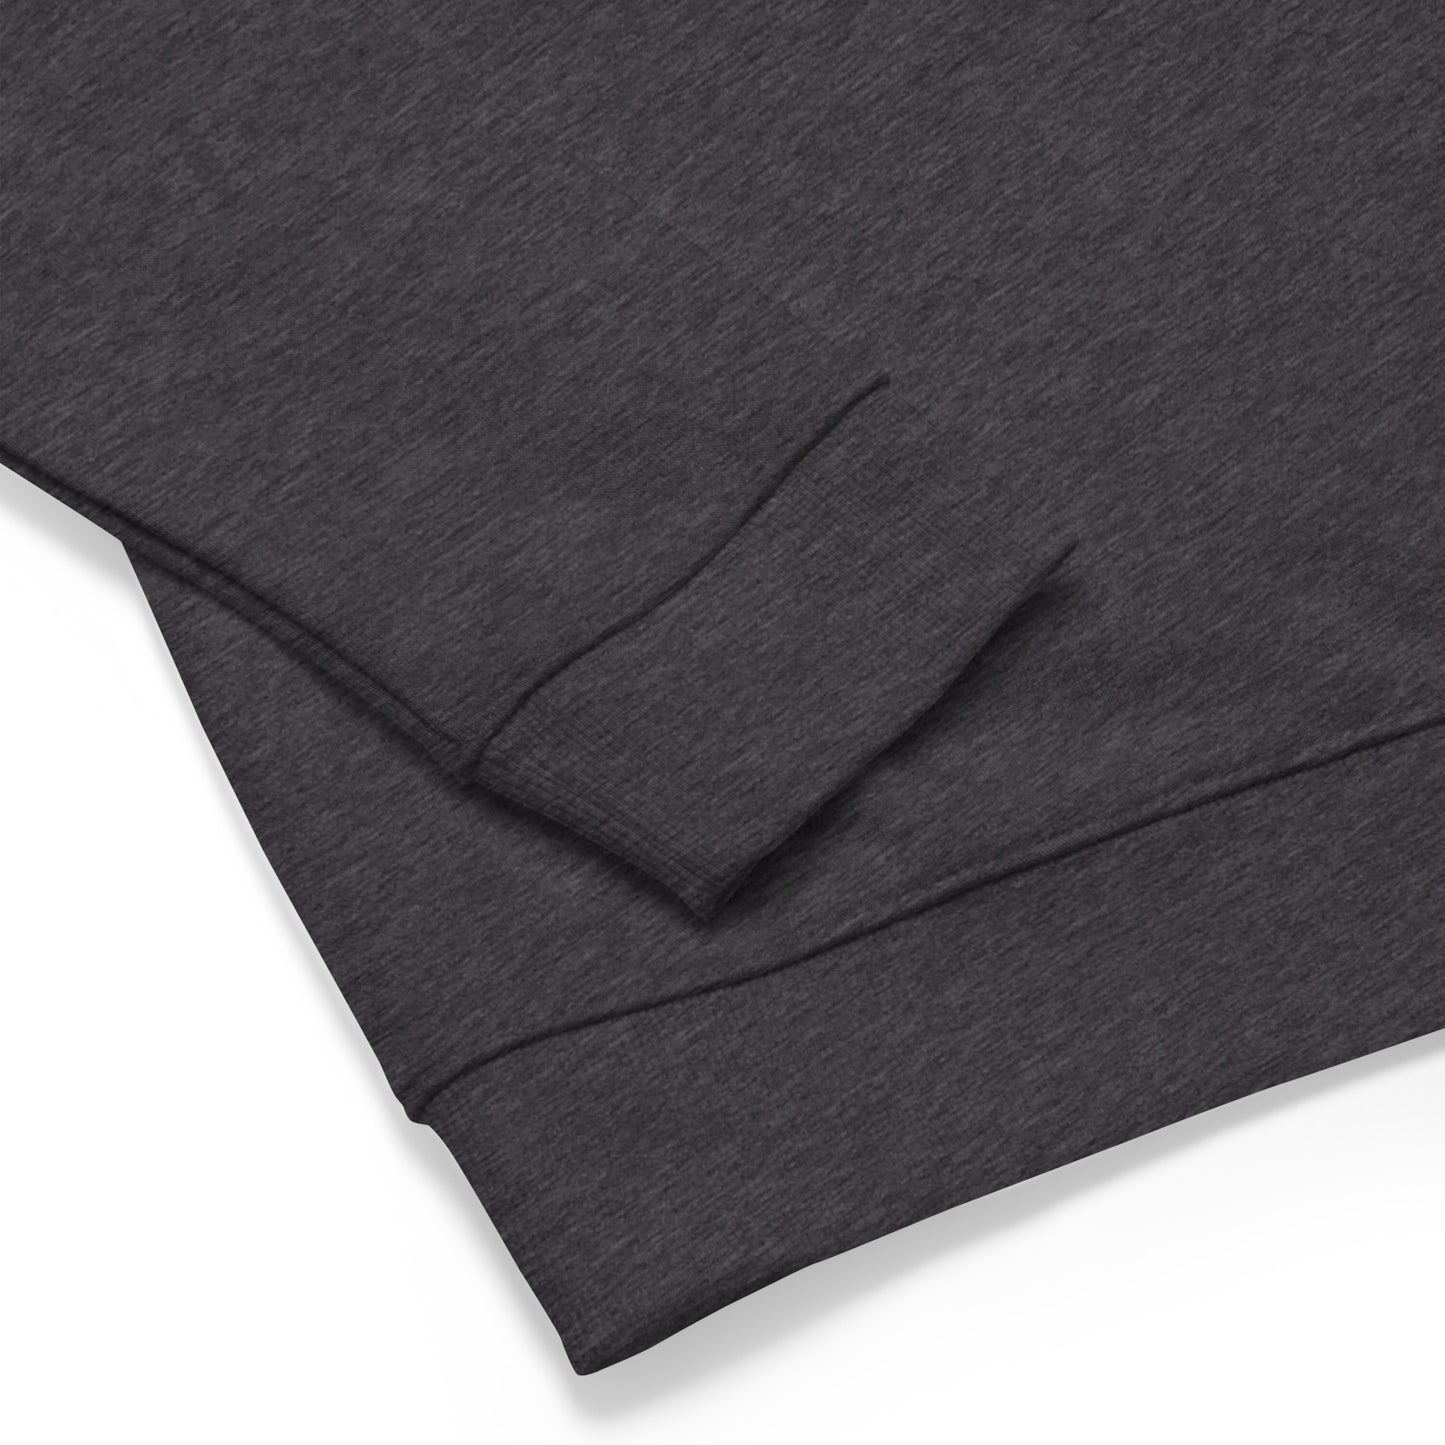 Billionaire Mindset Disc Sweatshirt (Charcoal) - QuikWit Tees